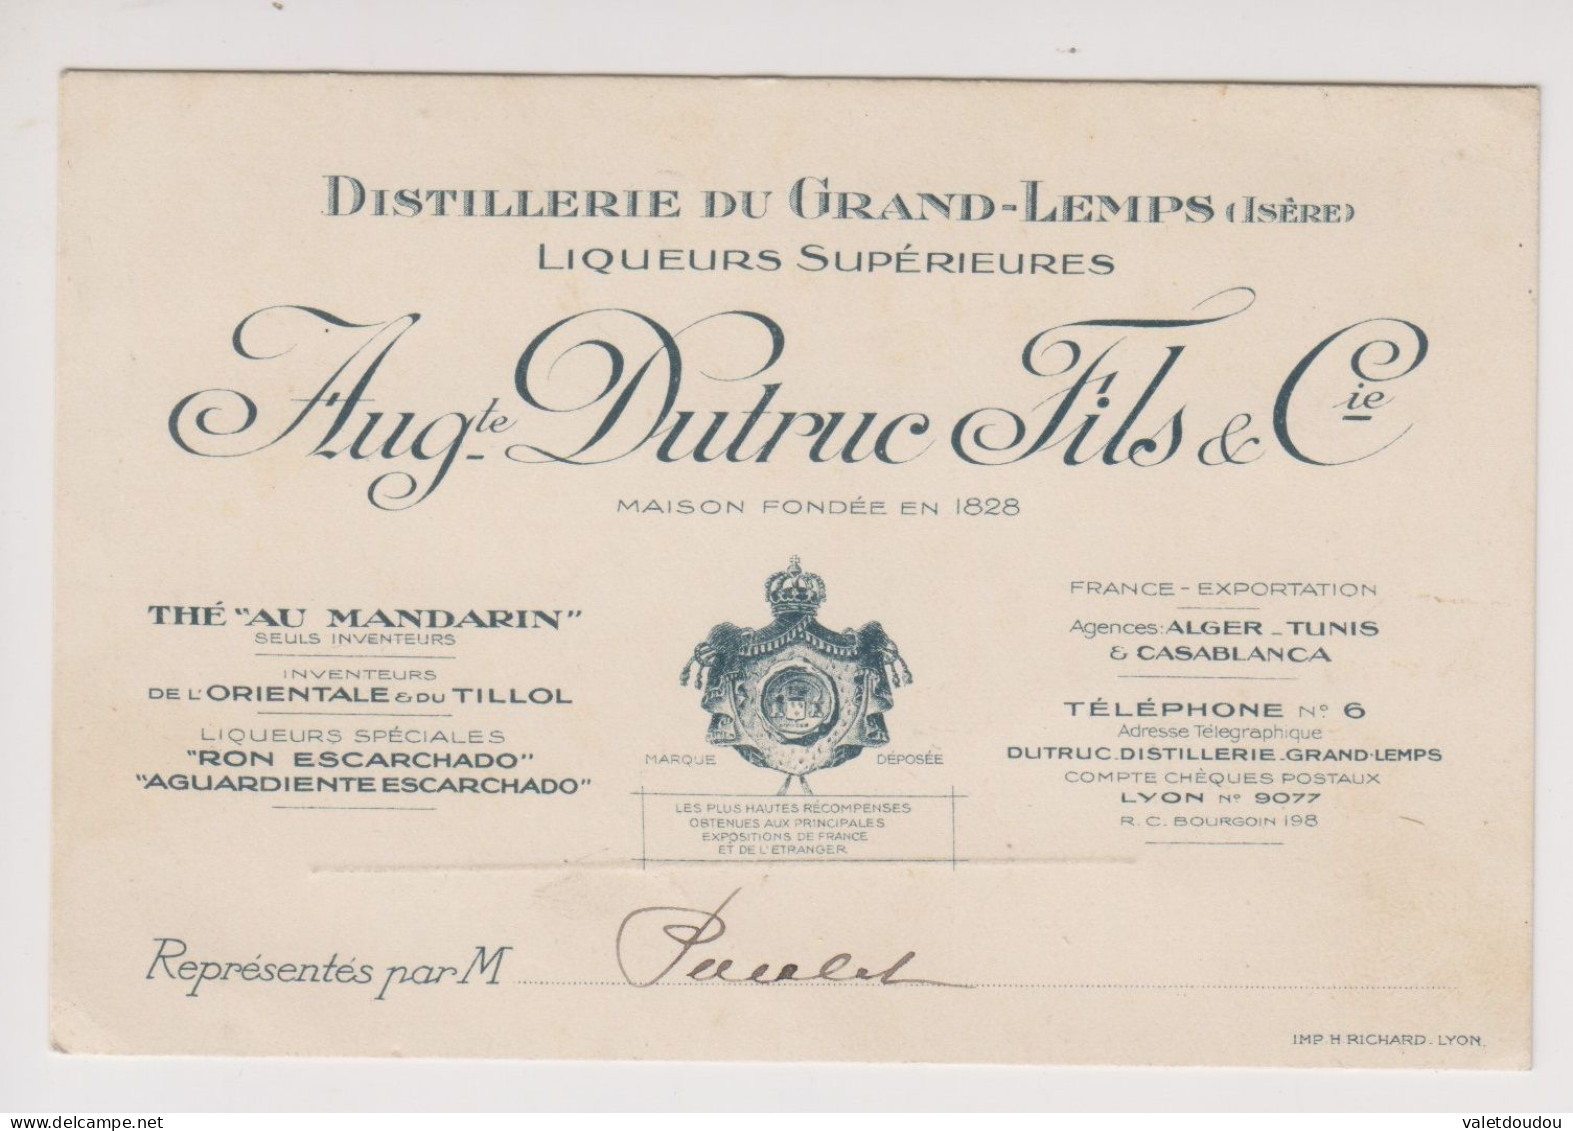 Carte De Visite Auguste Dutruc Fils & Cie .Distillerie Du Grand-Lemps. - Cartes De Visite